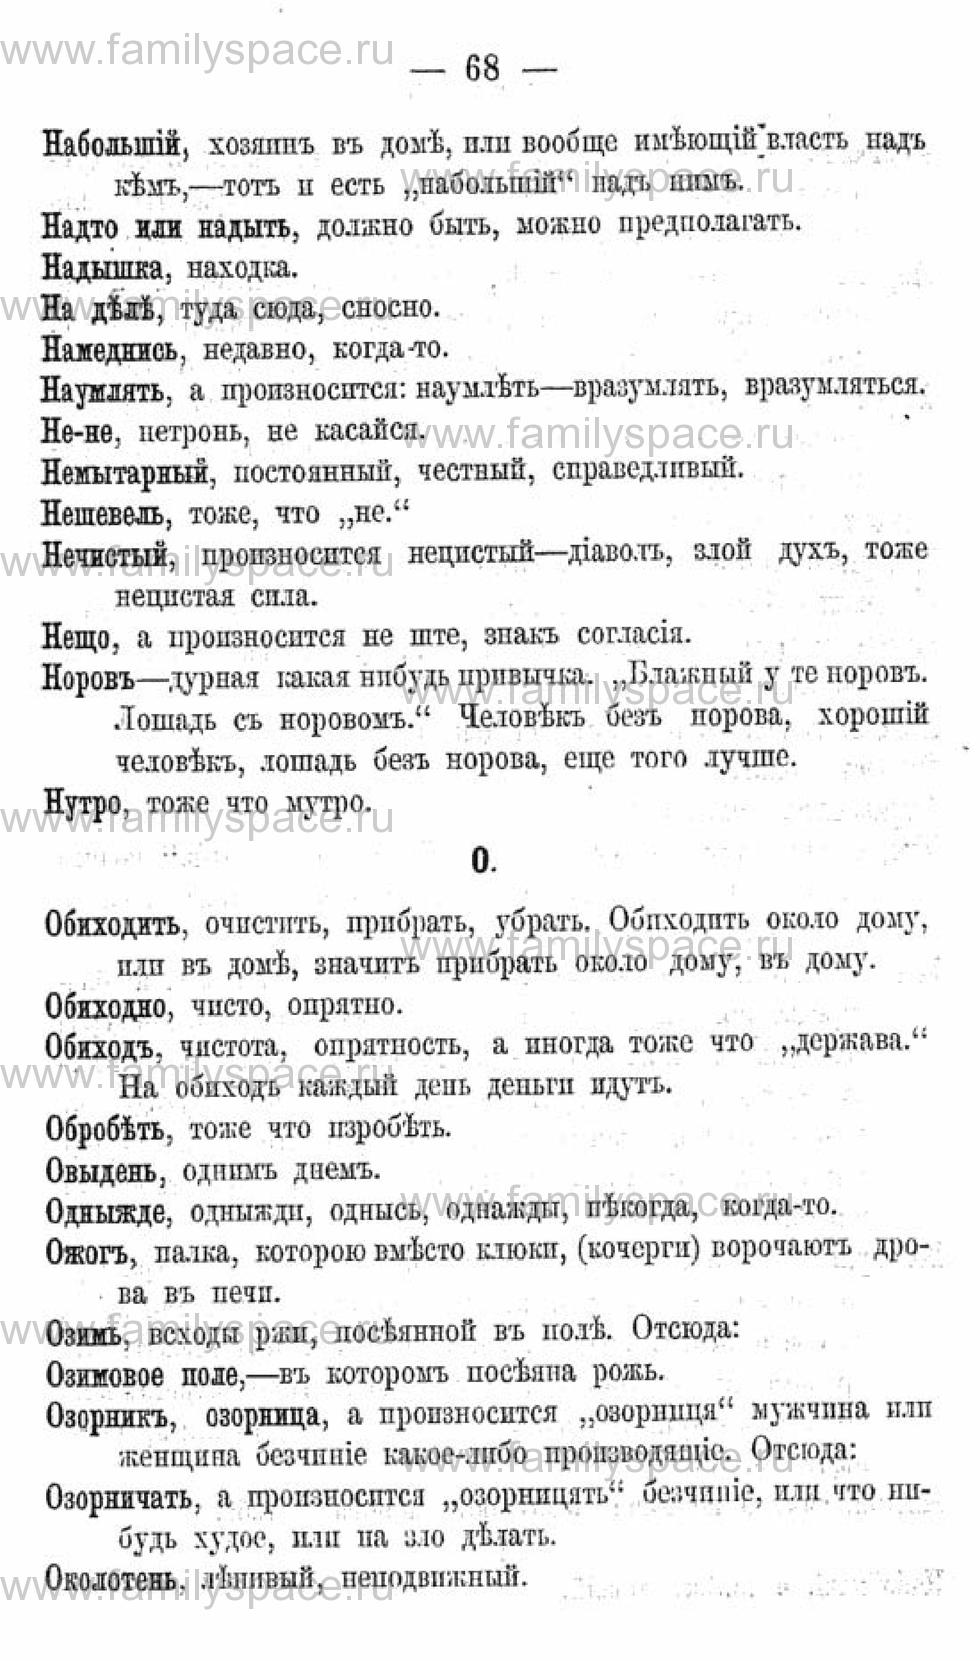 Поиск по фамилии - Календарь Вятской губернии - 1880, страница 2068